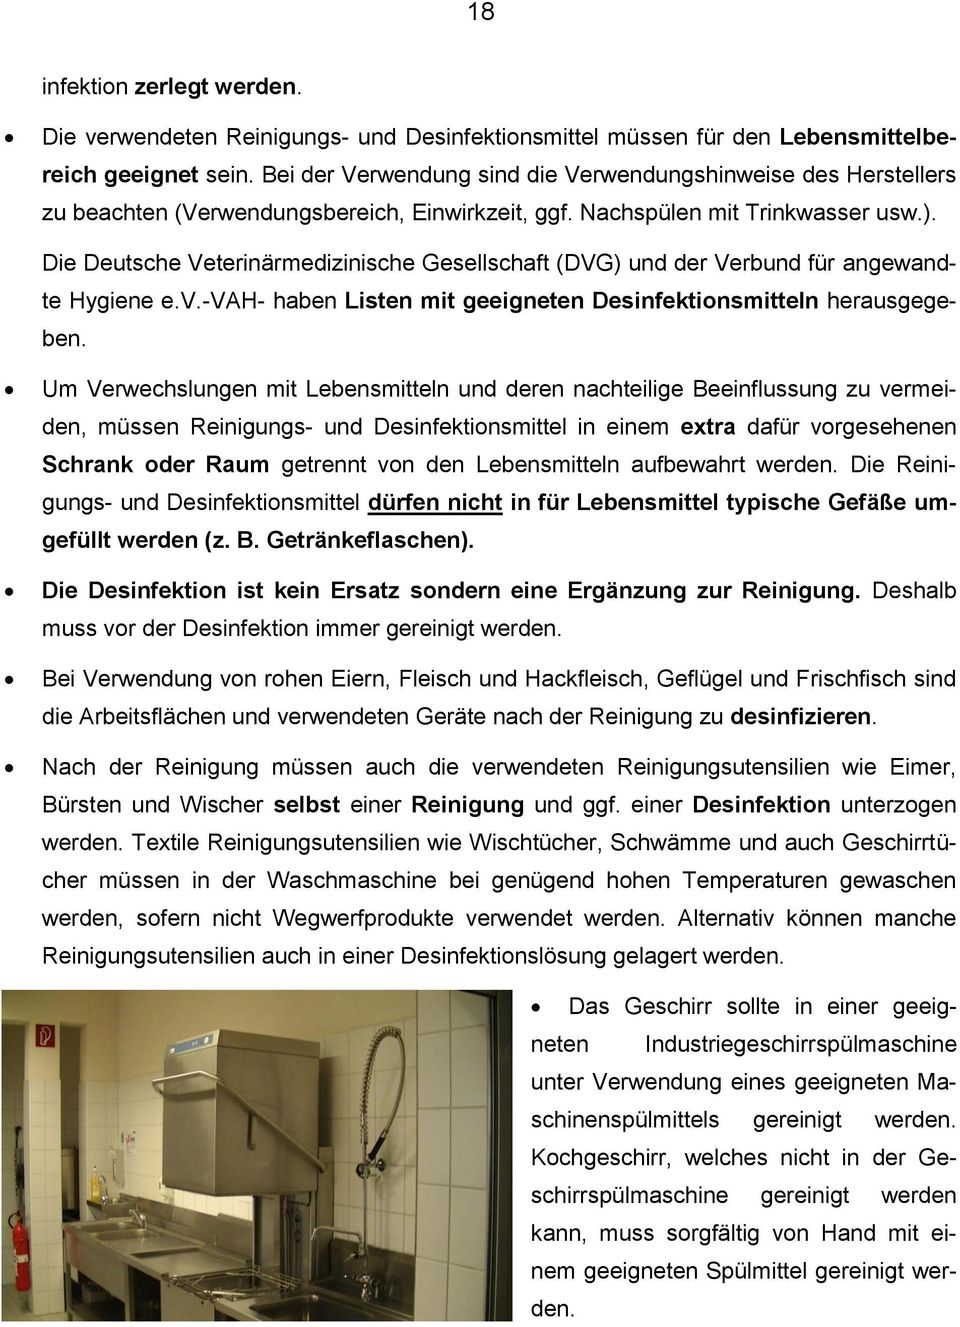 Die Deutsche Veterinärmedizinische Gesellschaft (DVG) und der Verbund für angewandte Hygiene e.v.-vah- haben Listen mit geeigneten Desinfektionsmitteln herausgegeben.